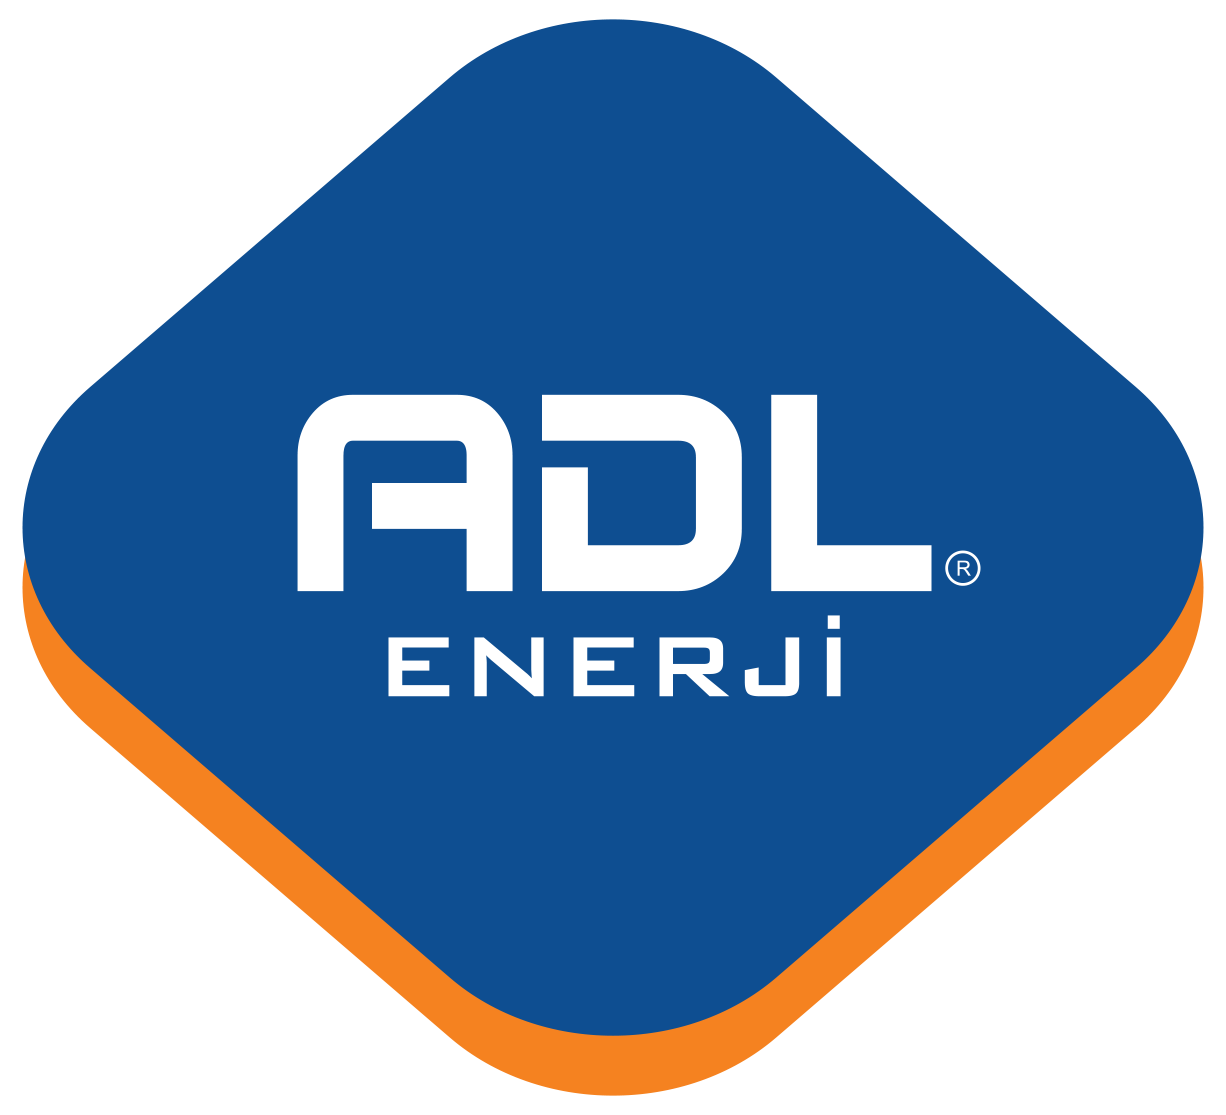  ADL Enerji | Endüstriyel Çatı Güneş Enerji Santralleri, Arazi Tipi Güneş Enerji Santralleri, Uzaktan İzleme Sistemi Bakım & Onarım, Solar Otopark Uygulamaları, Proje, Mühendislik ve Yatırım Danışmanlığı, Enerji Verimliliği Danışmanlığı, Konya Güneş Enerjisi